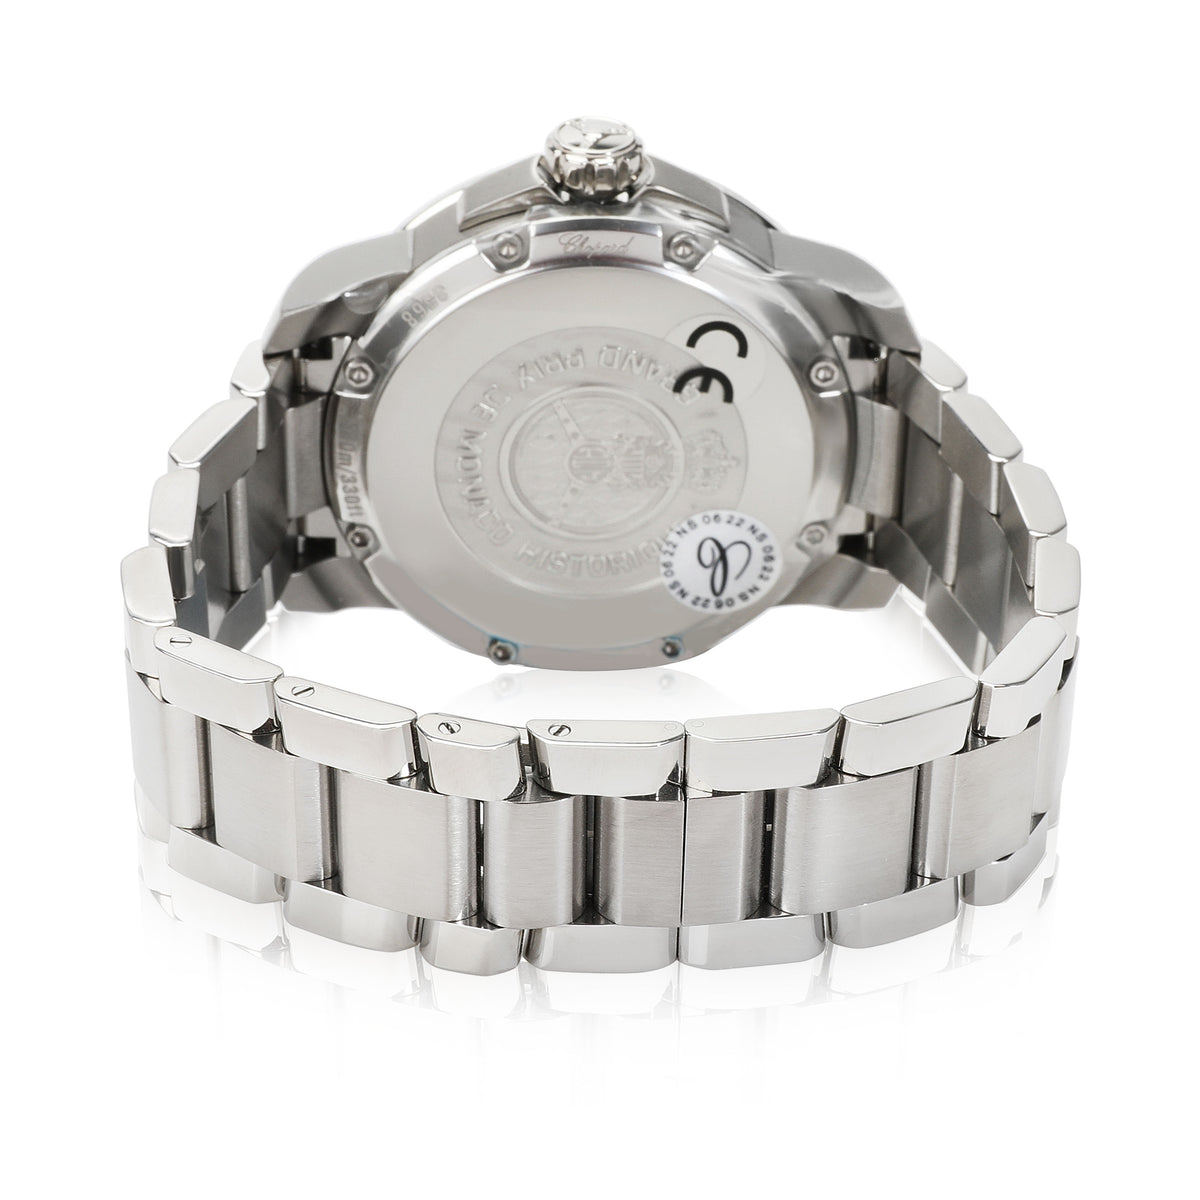 Chopard Monaco Historique 158568-3003 Men's Watch in  SS/Titanium